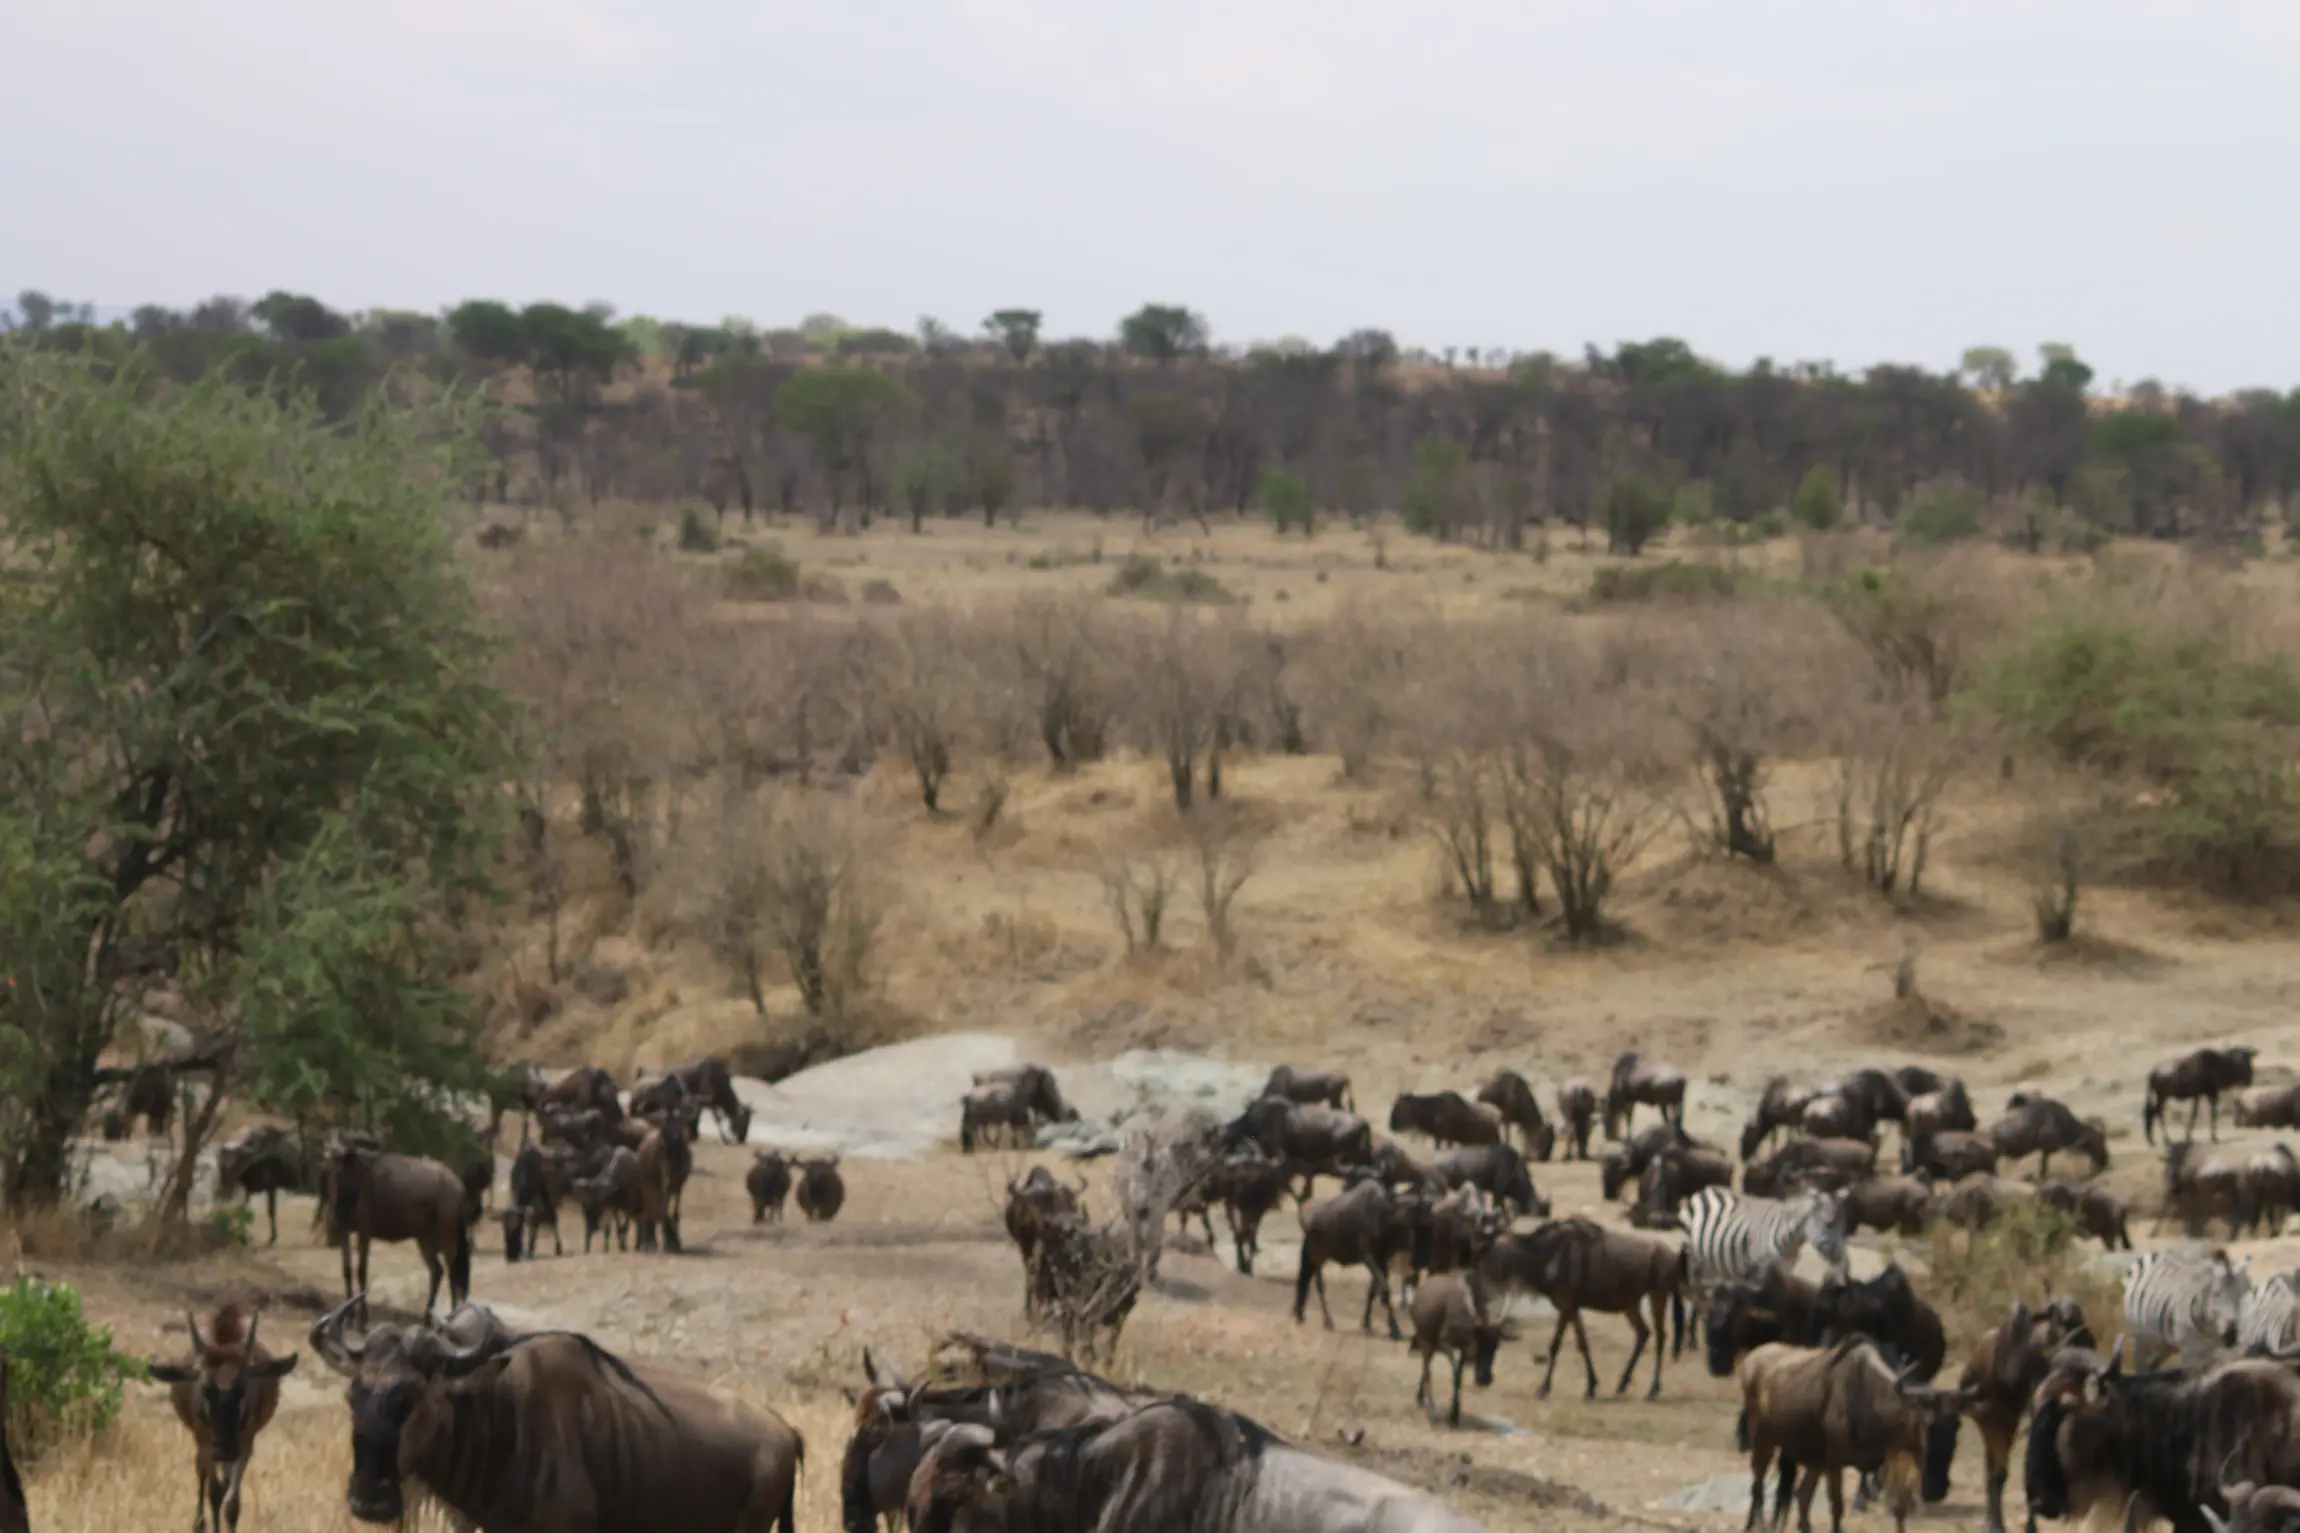 Wildebeest around Ikoma Area